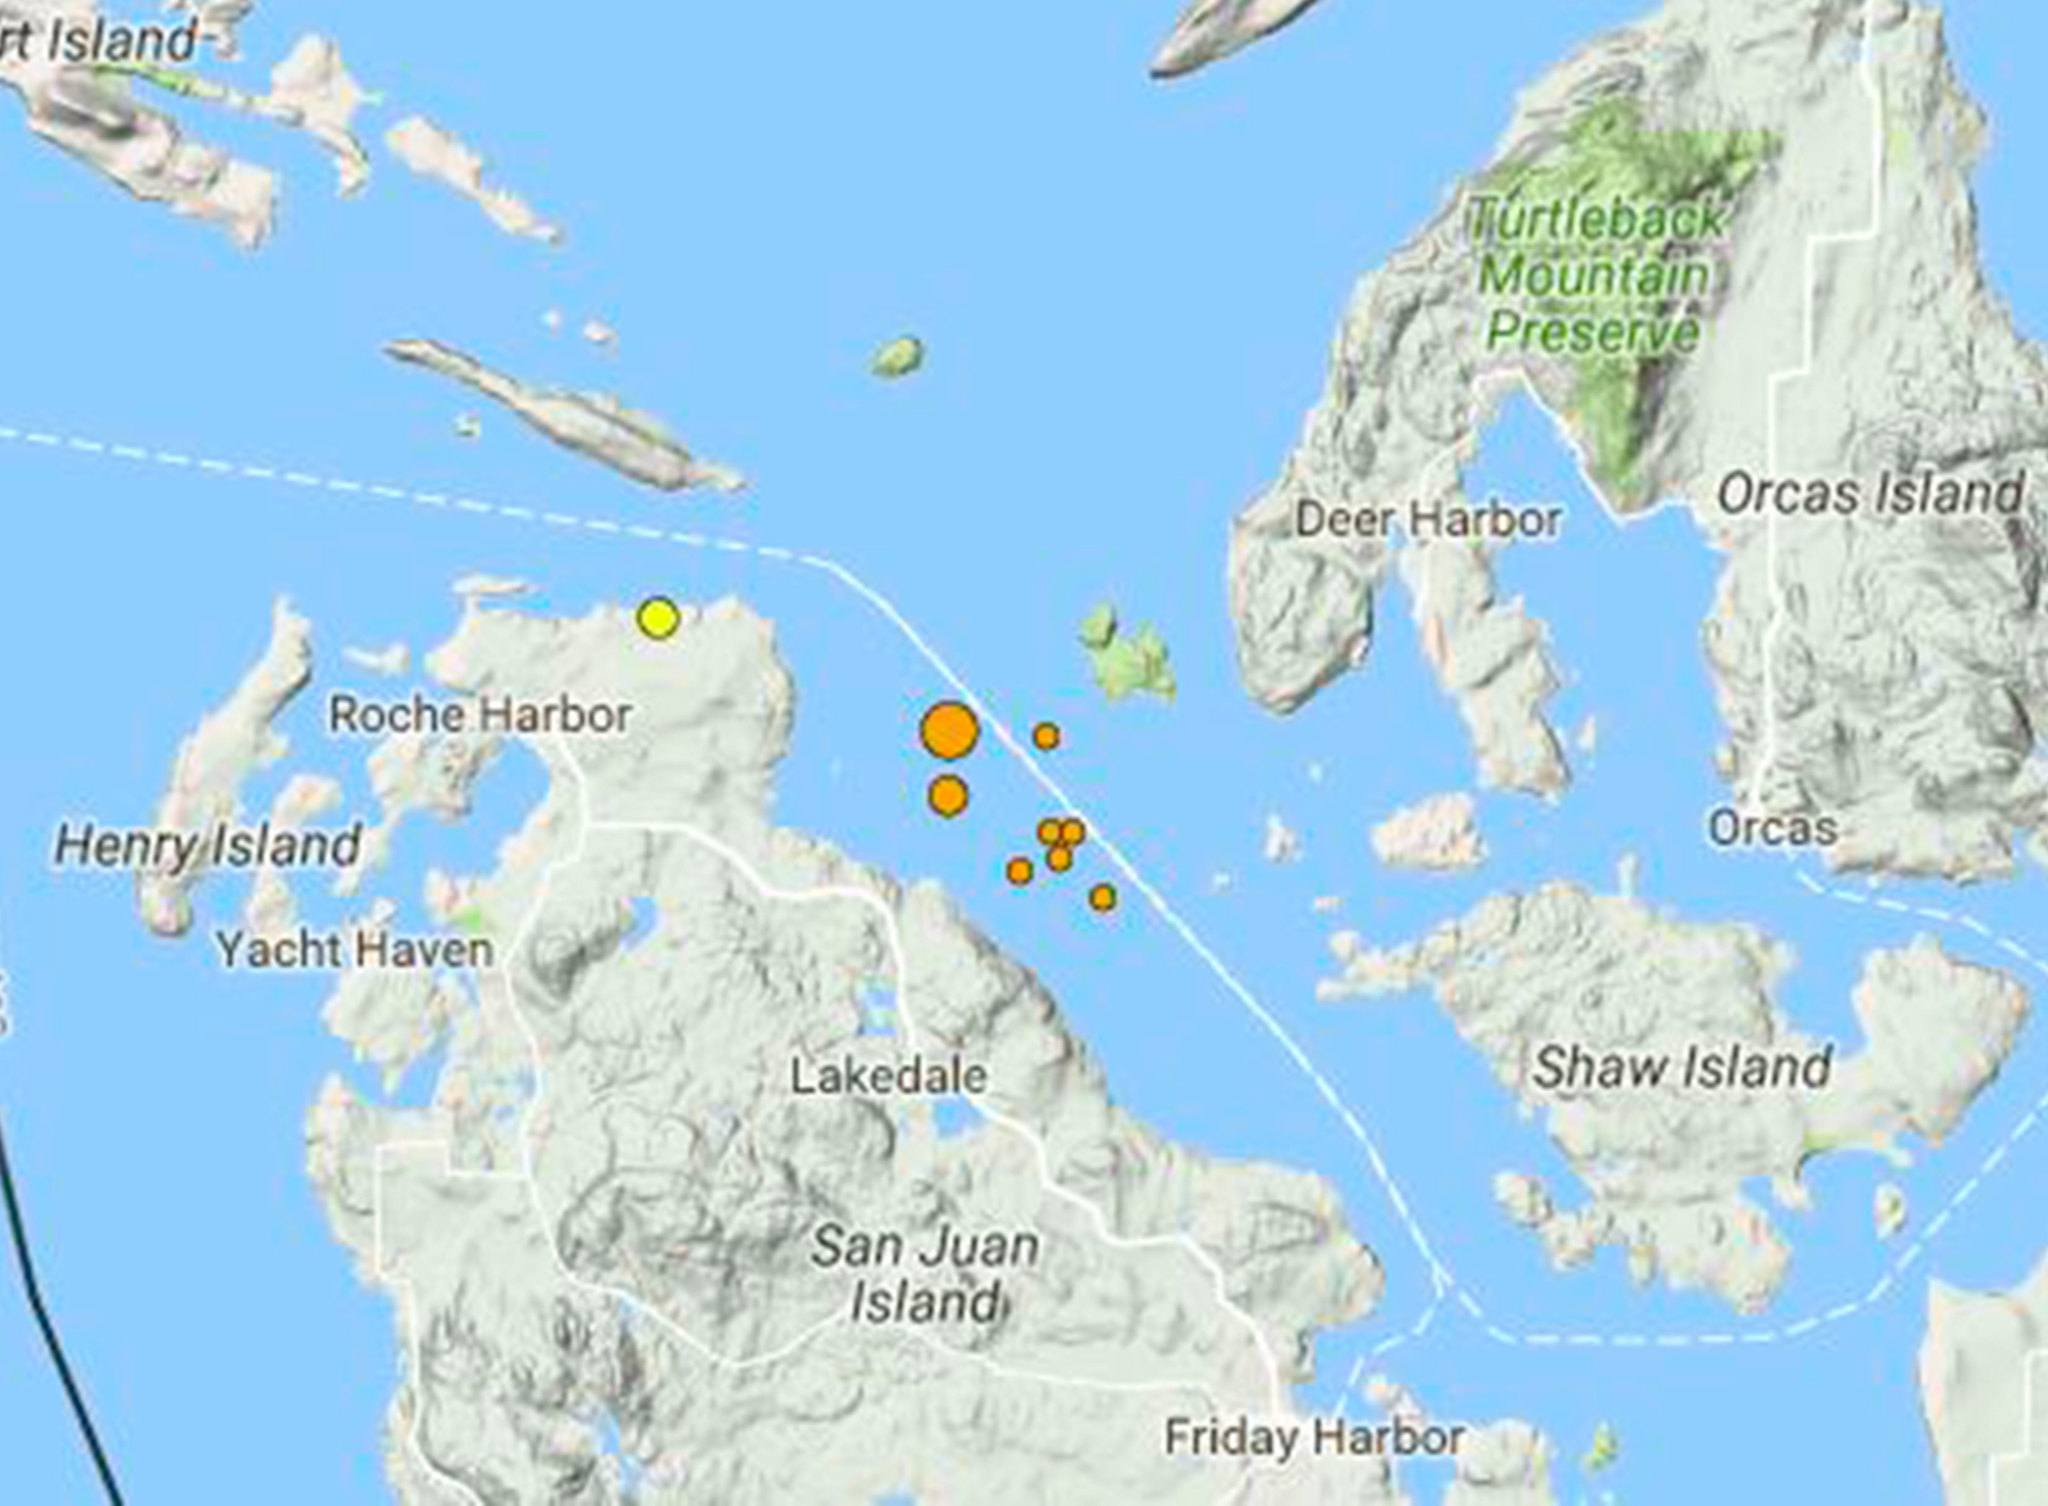 Small earthquakes hit near the San Juan Islands